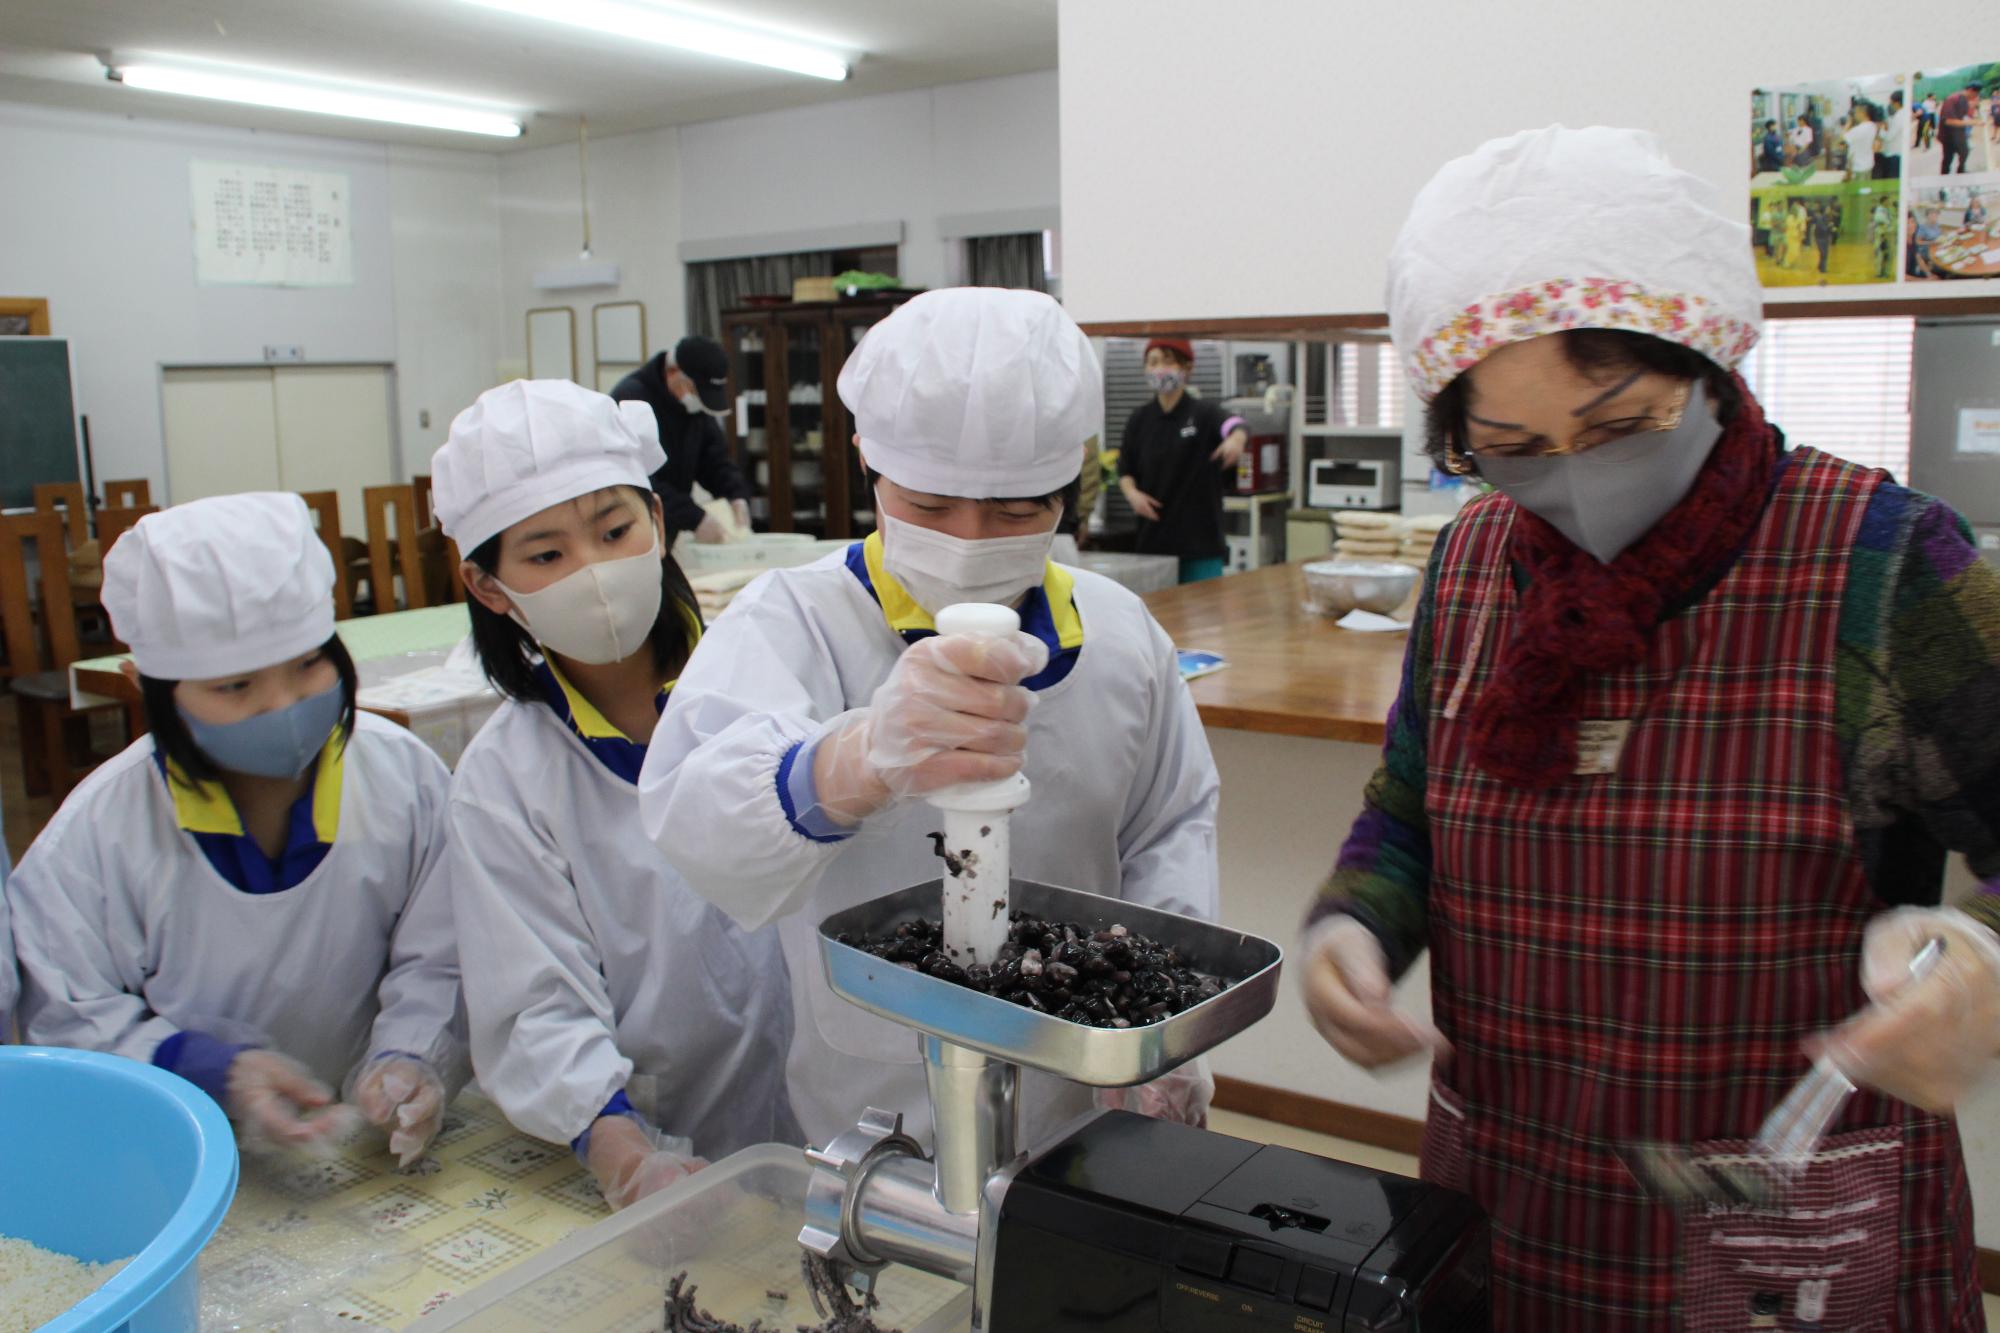 煮た黒大豆をミンサーという機械でつぶしている児童らと指導する女性の写真